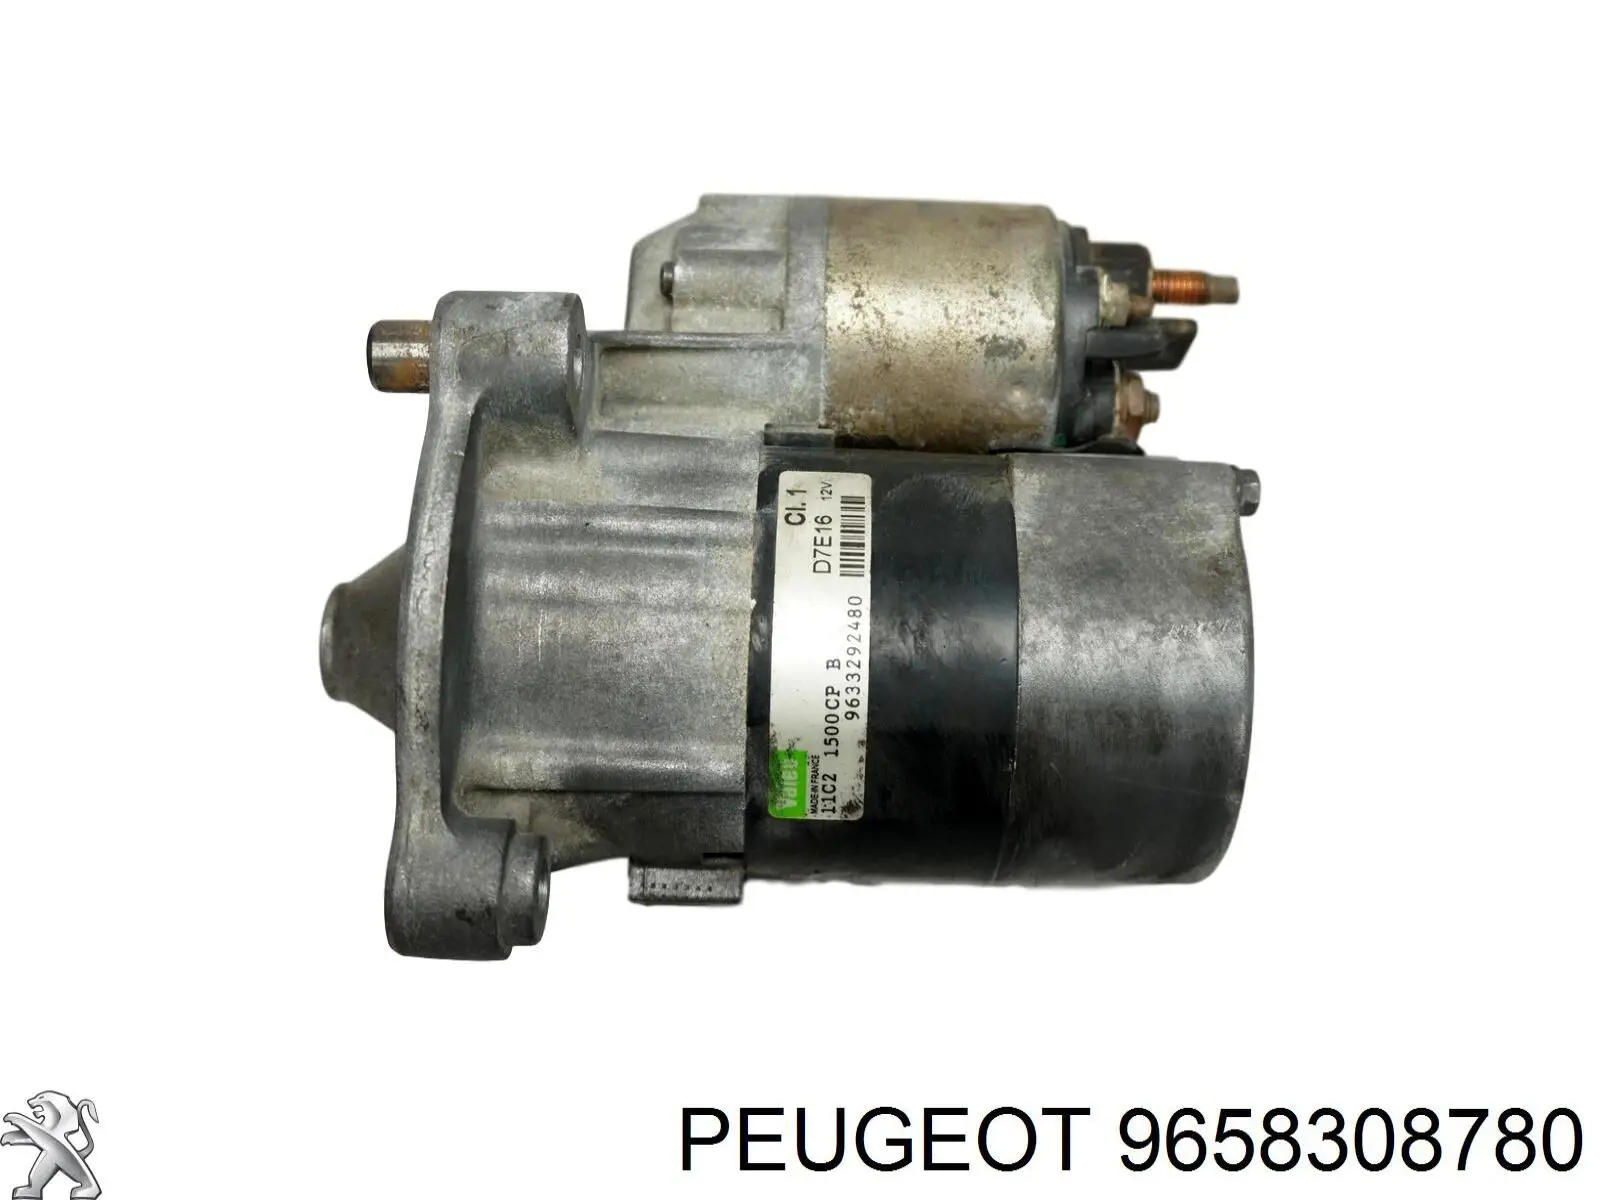 9658308780 Peugeot/Citroen motor de arranque